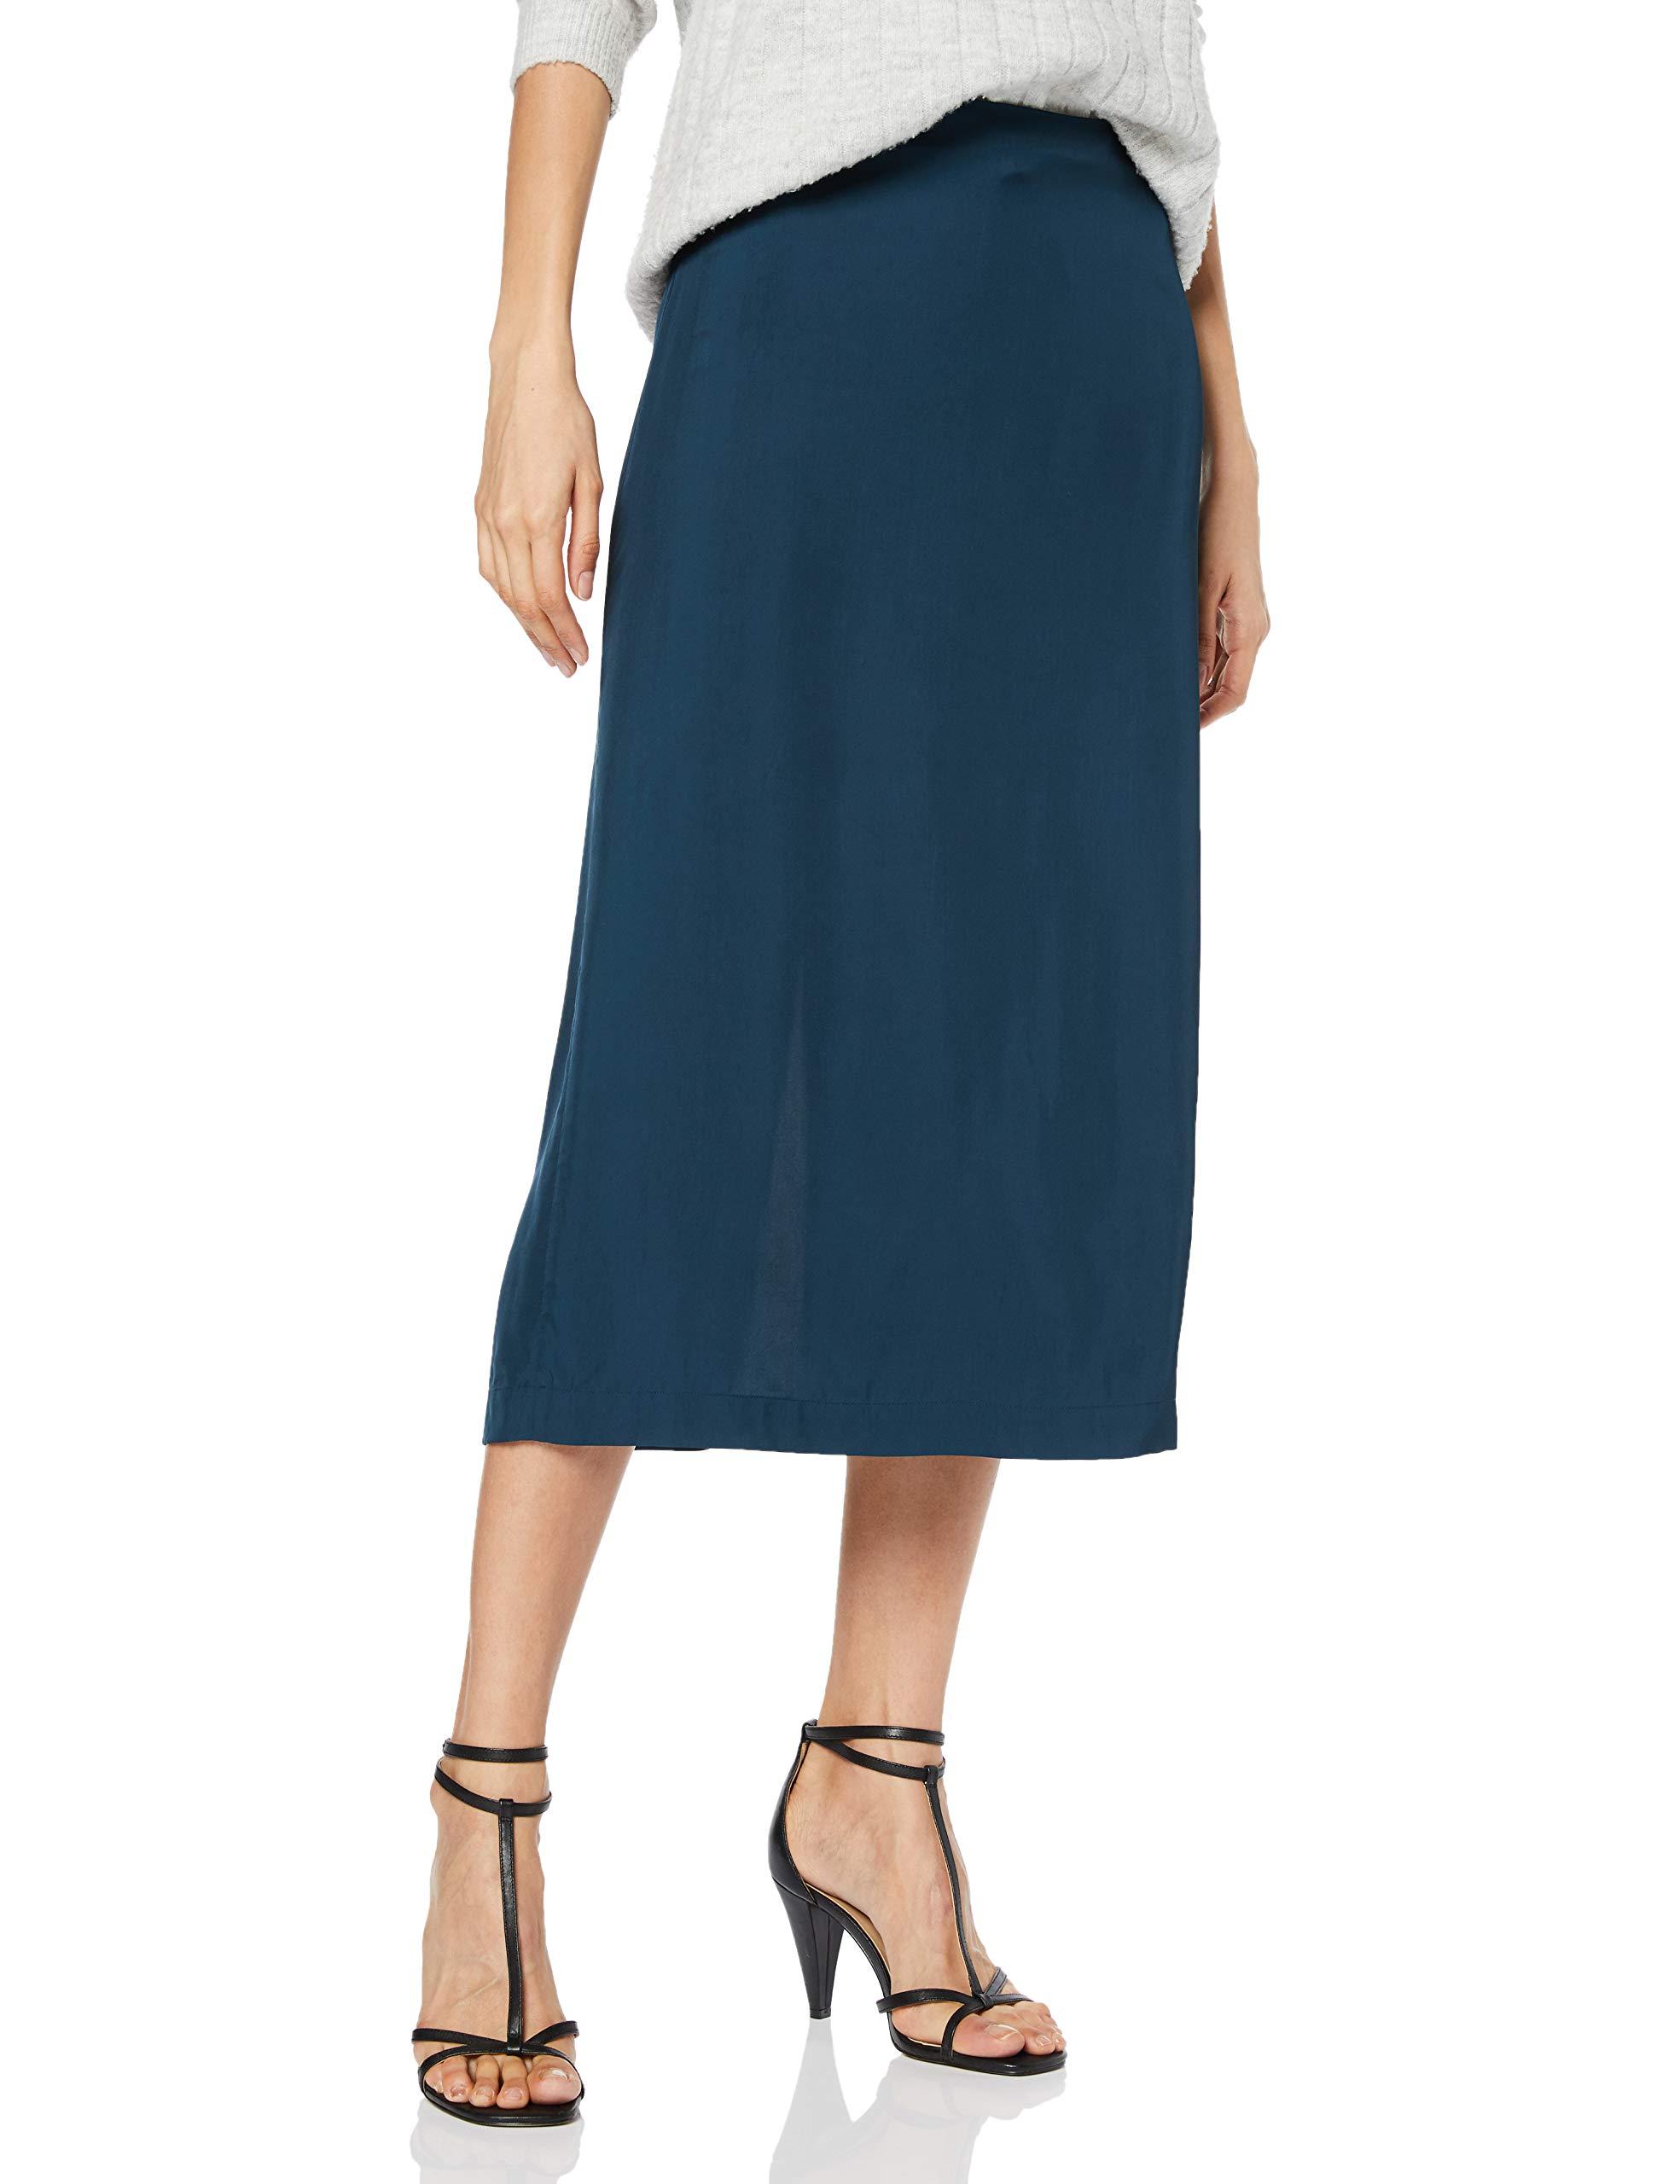 Filippa K Kate Skirt in Blue - Lyst